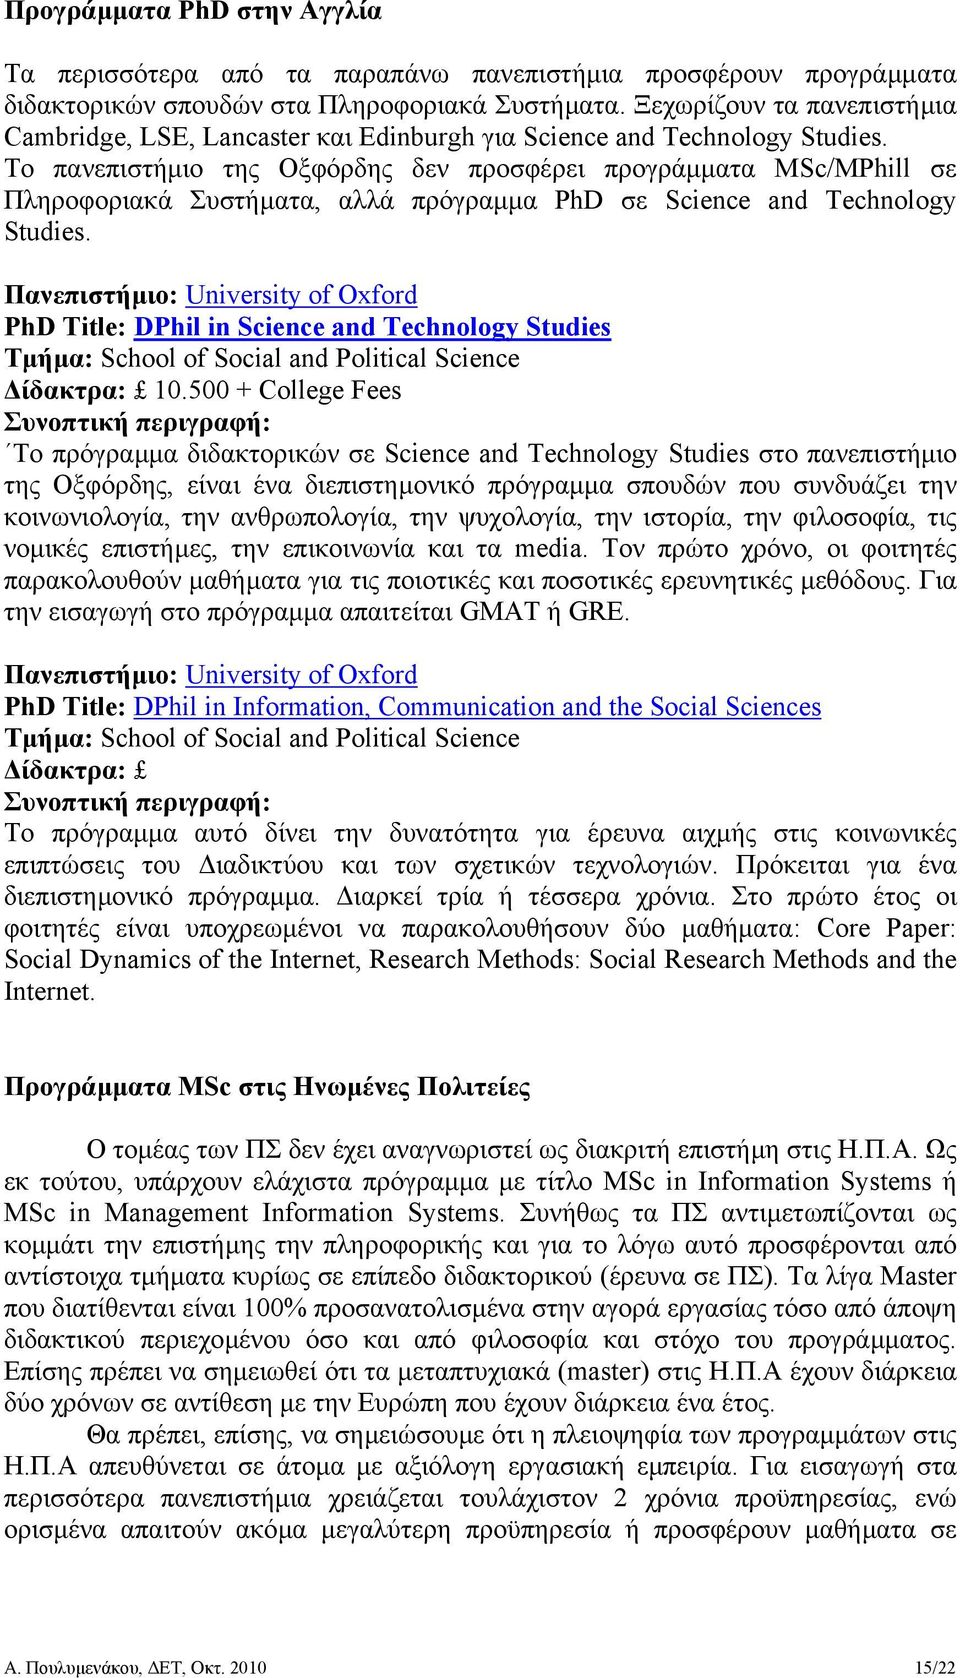 Το πανεπιστήµιο της Οξφόρδης δεν προσφέρει προγράµµατα MSc/MPhill σε Πληροφοριακά Συστήµατα, αλλά πρόγραµµα PhD σε Science and Technology Studies.